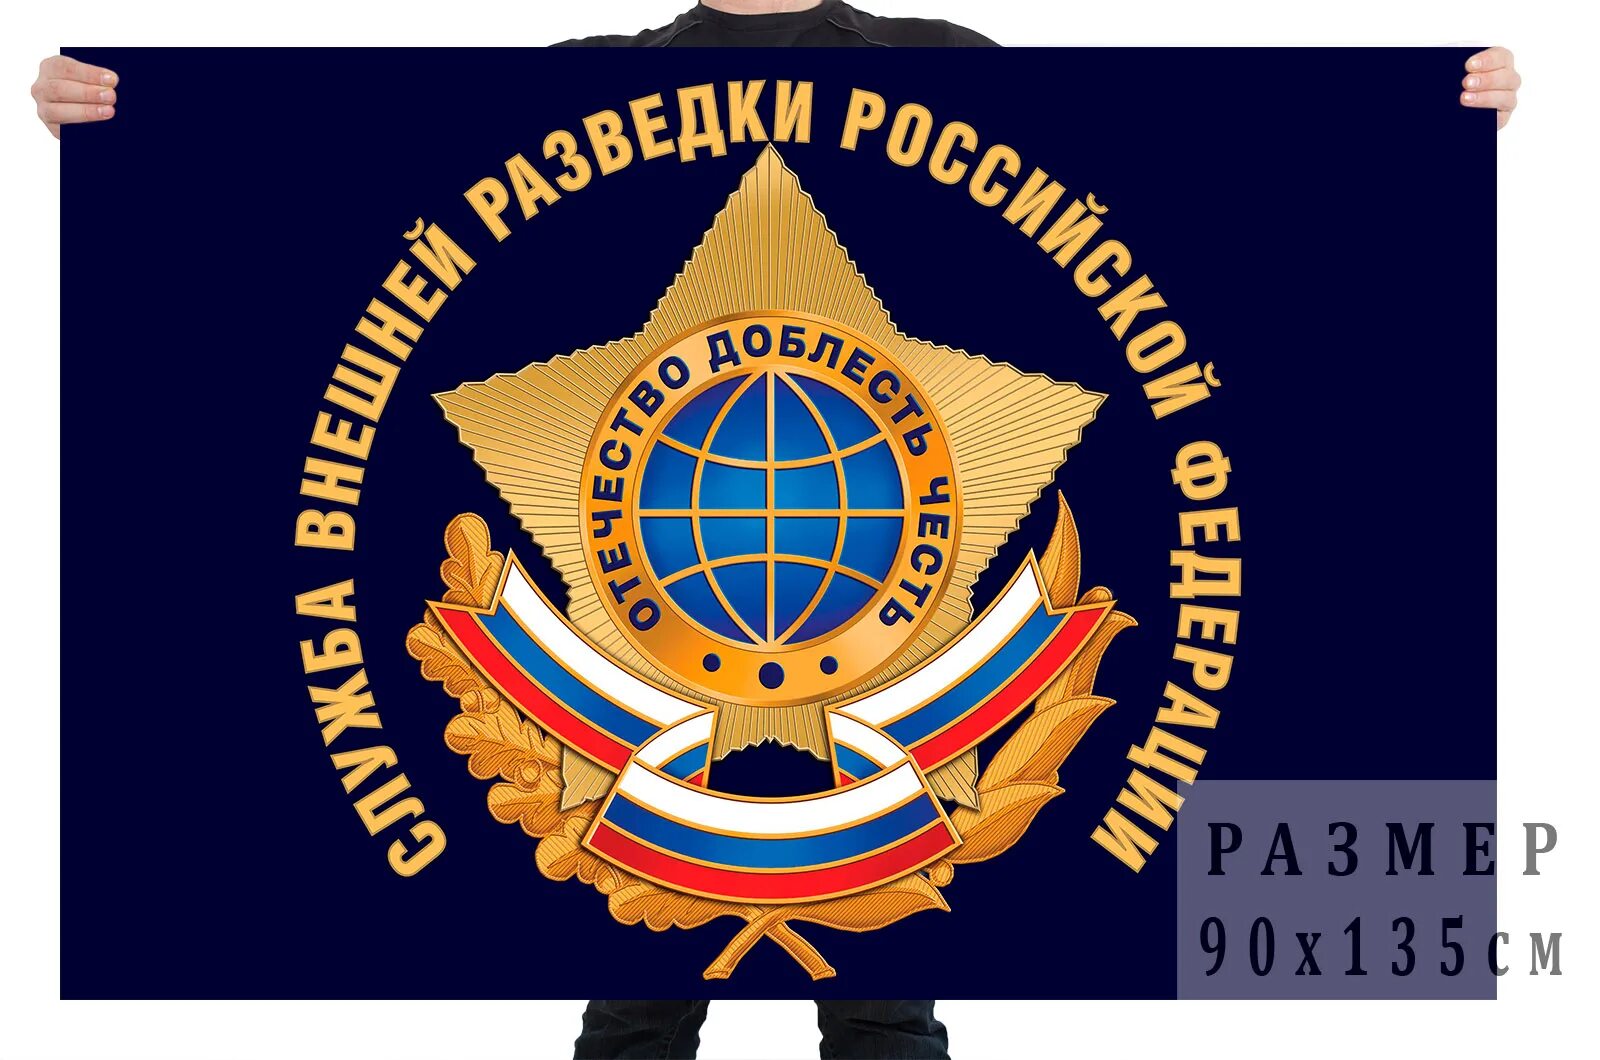 Внешняя разведка. СВР логотип. Служба внешней разведки эмблема. Внешняя разведка России.